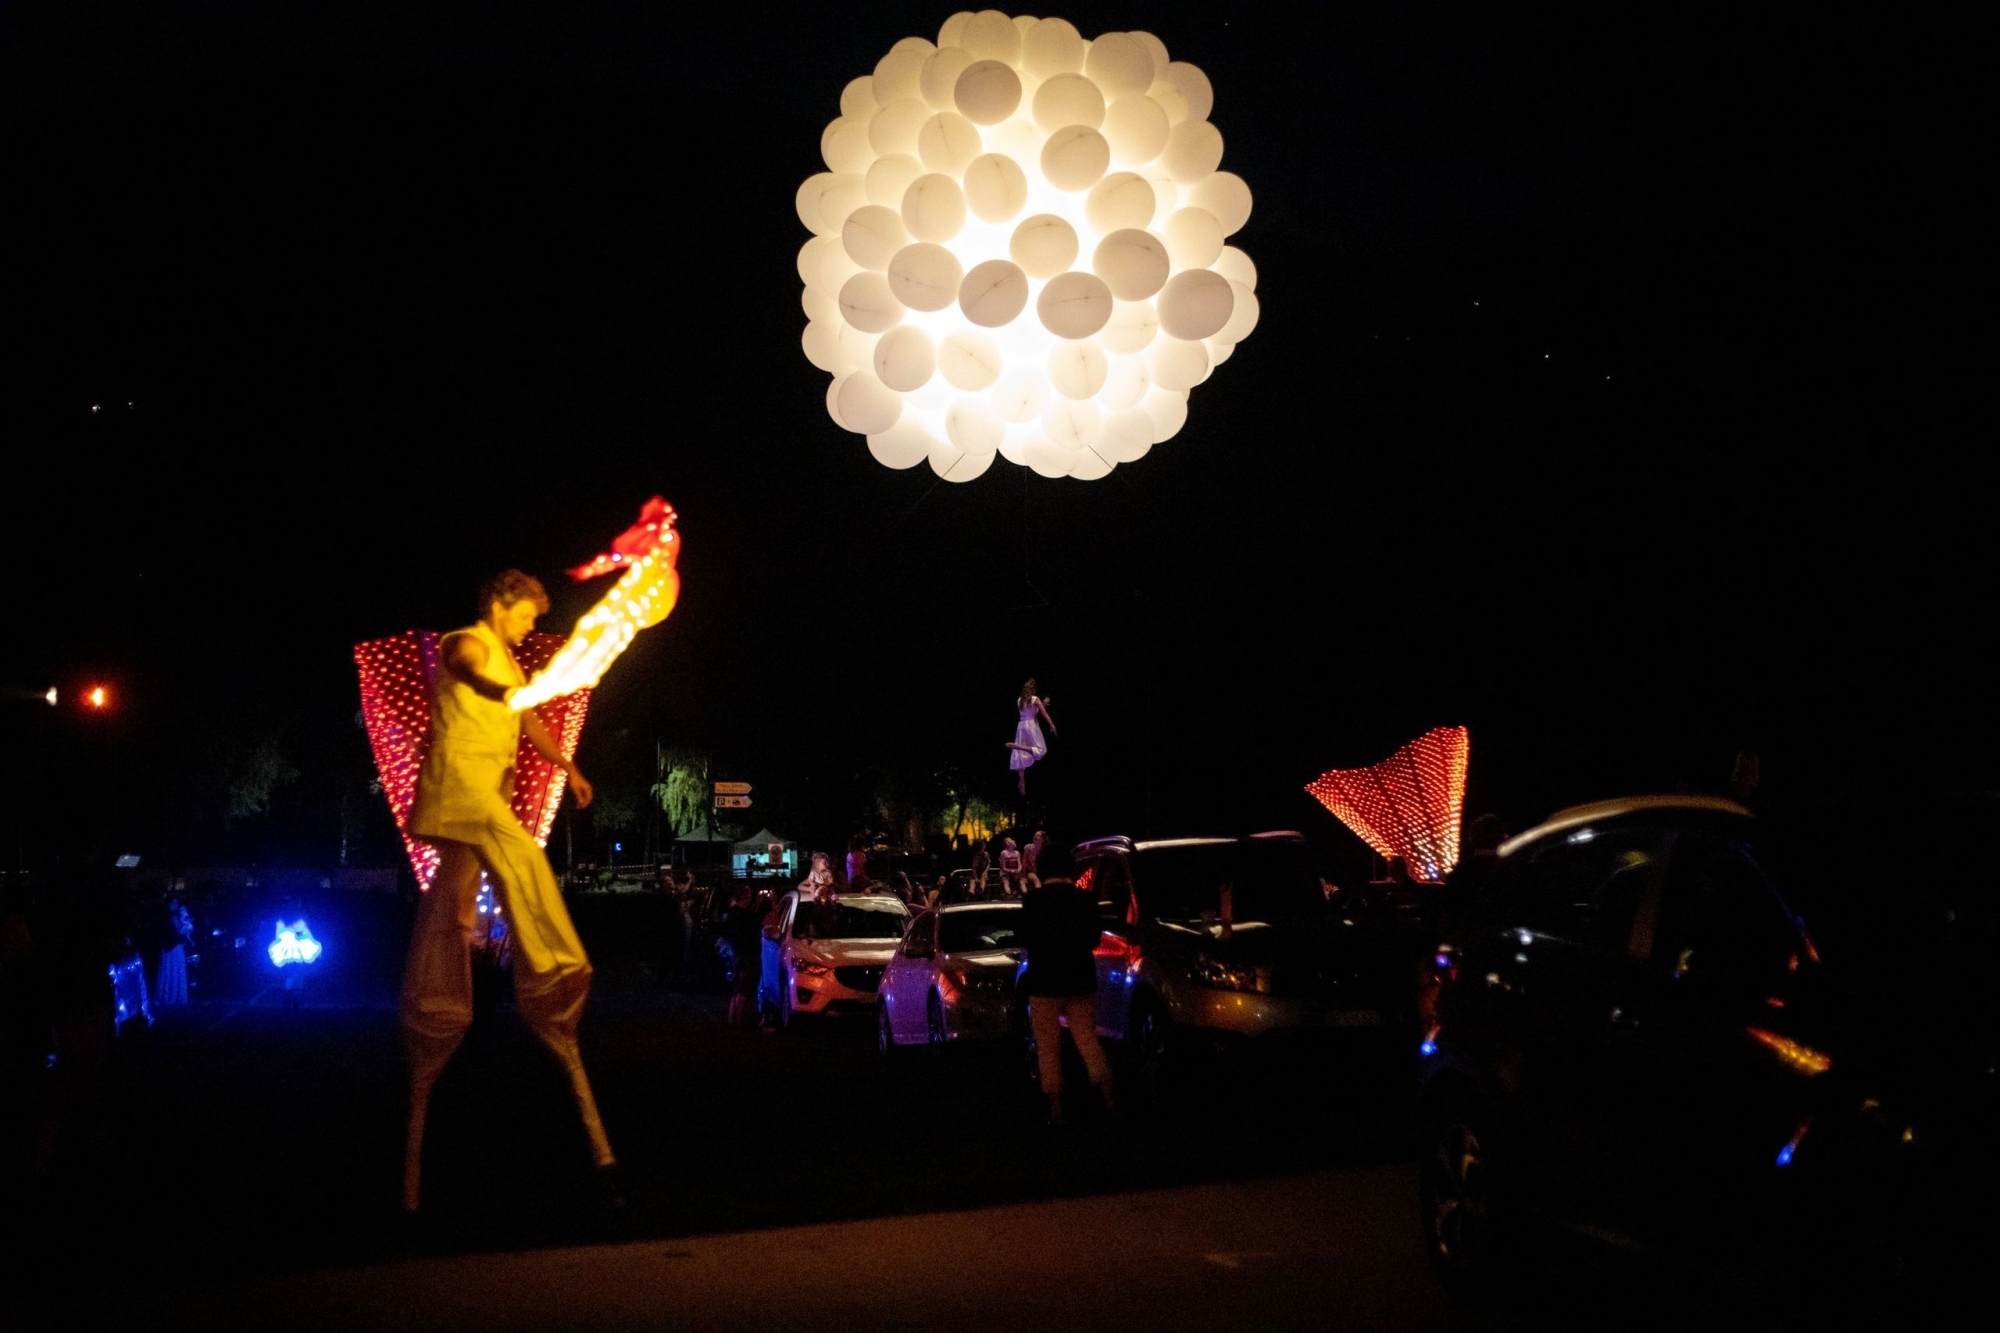 Une acrobate qui se produit avec une grappe de ballons, des personnages lumineux et d'autres surprises ont rythmé les deux soirées.